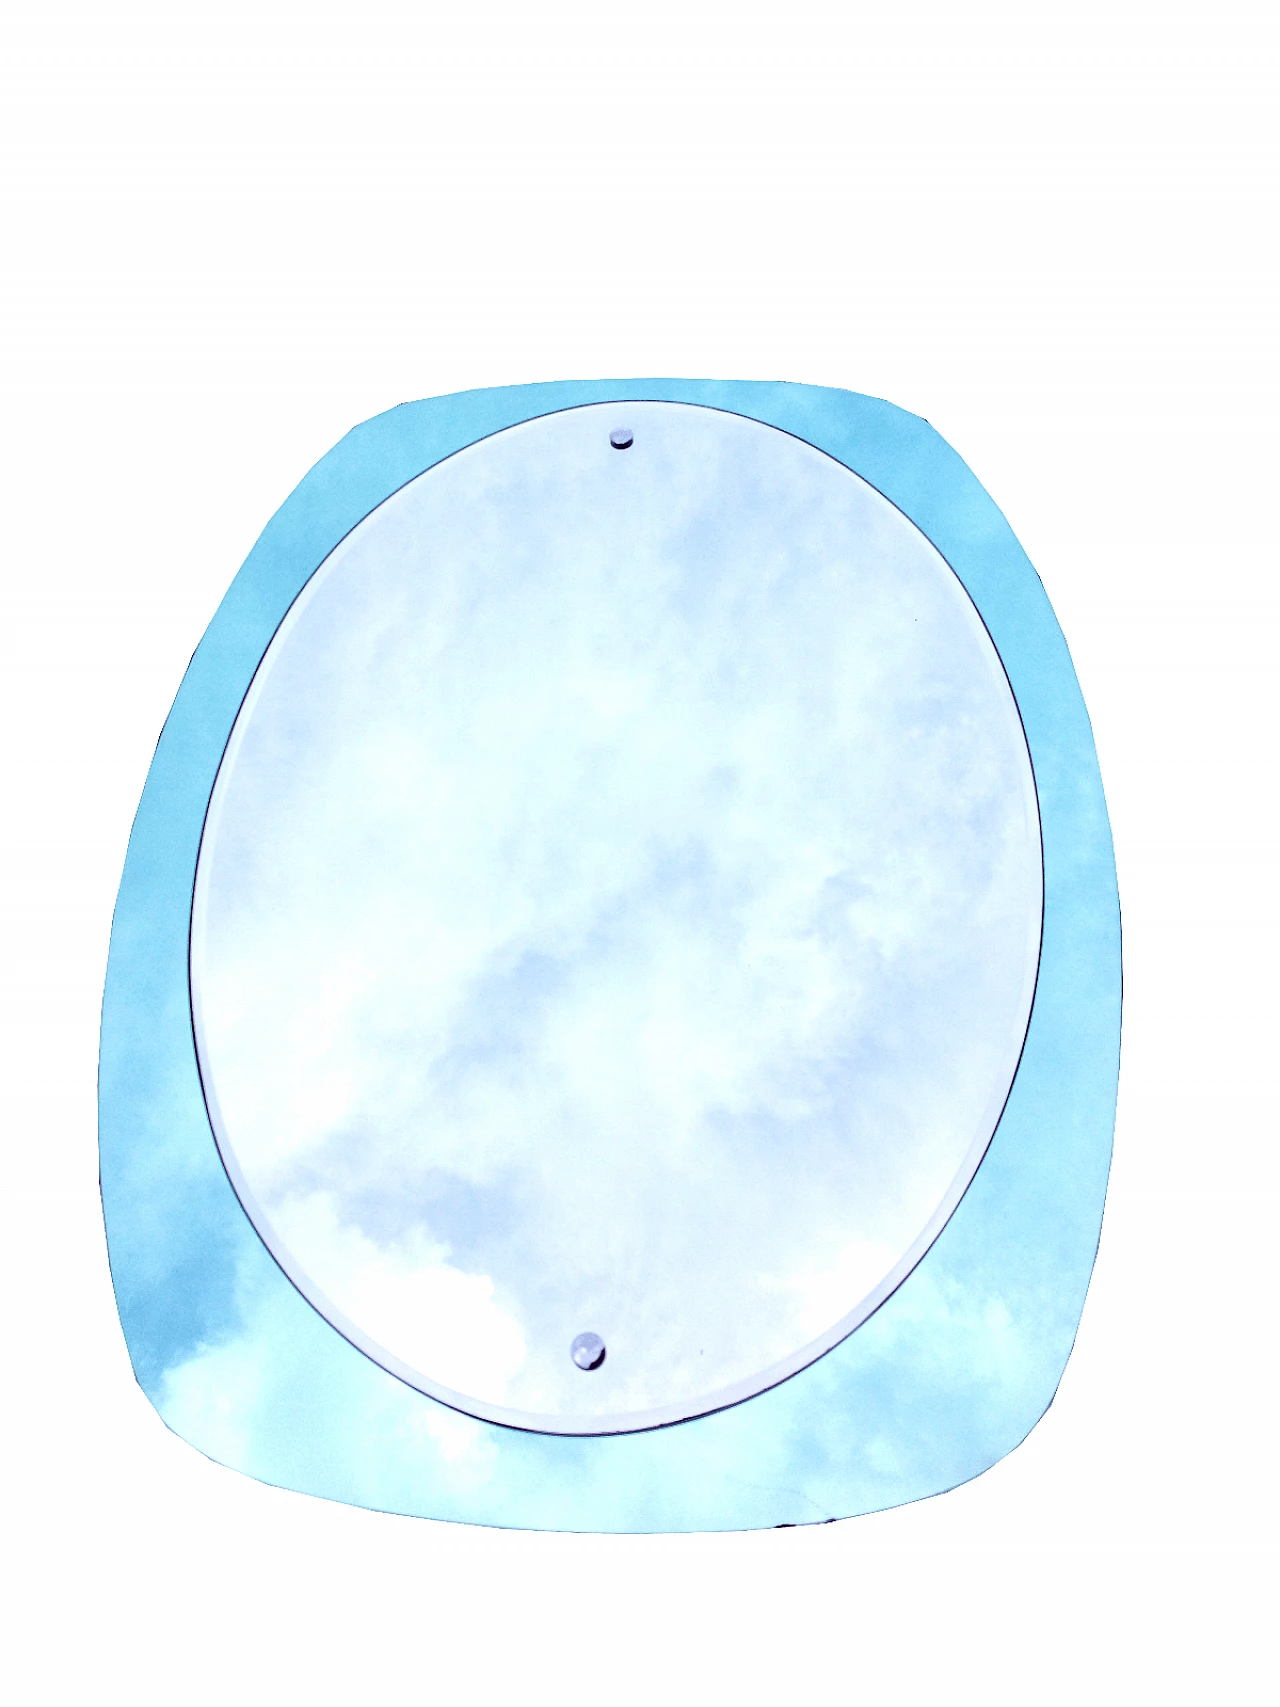 Specchio ovale con cornice azzurra, anni '60 1